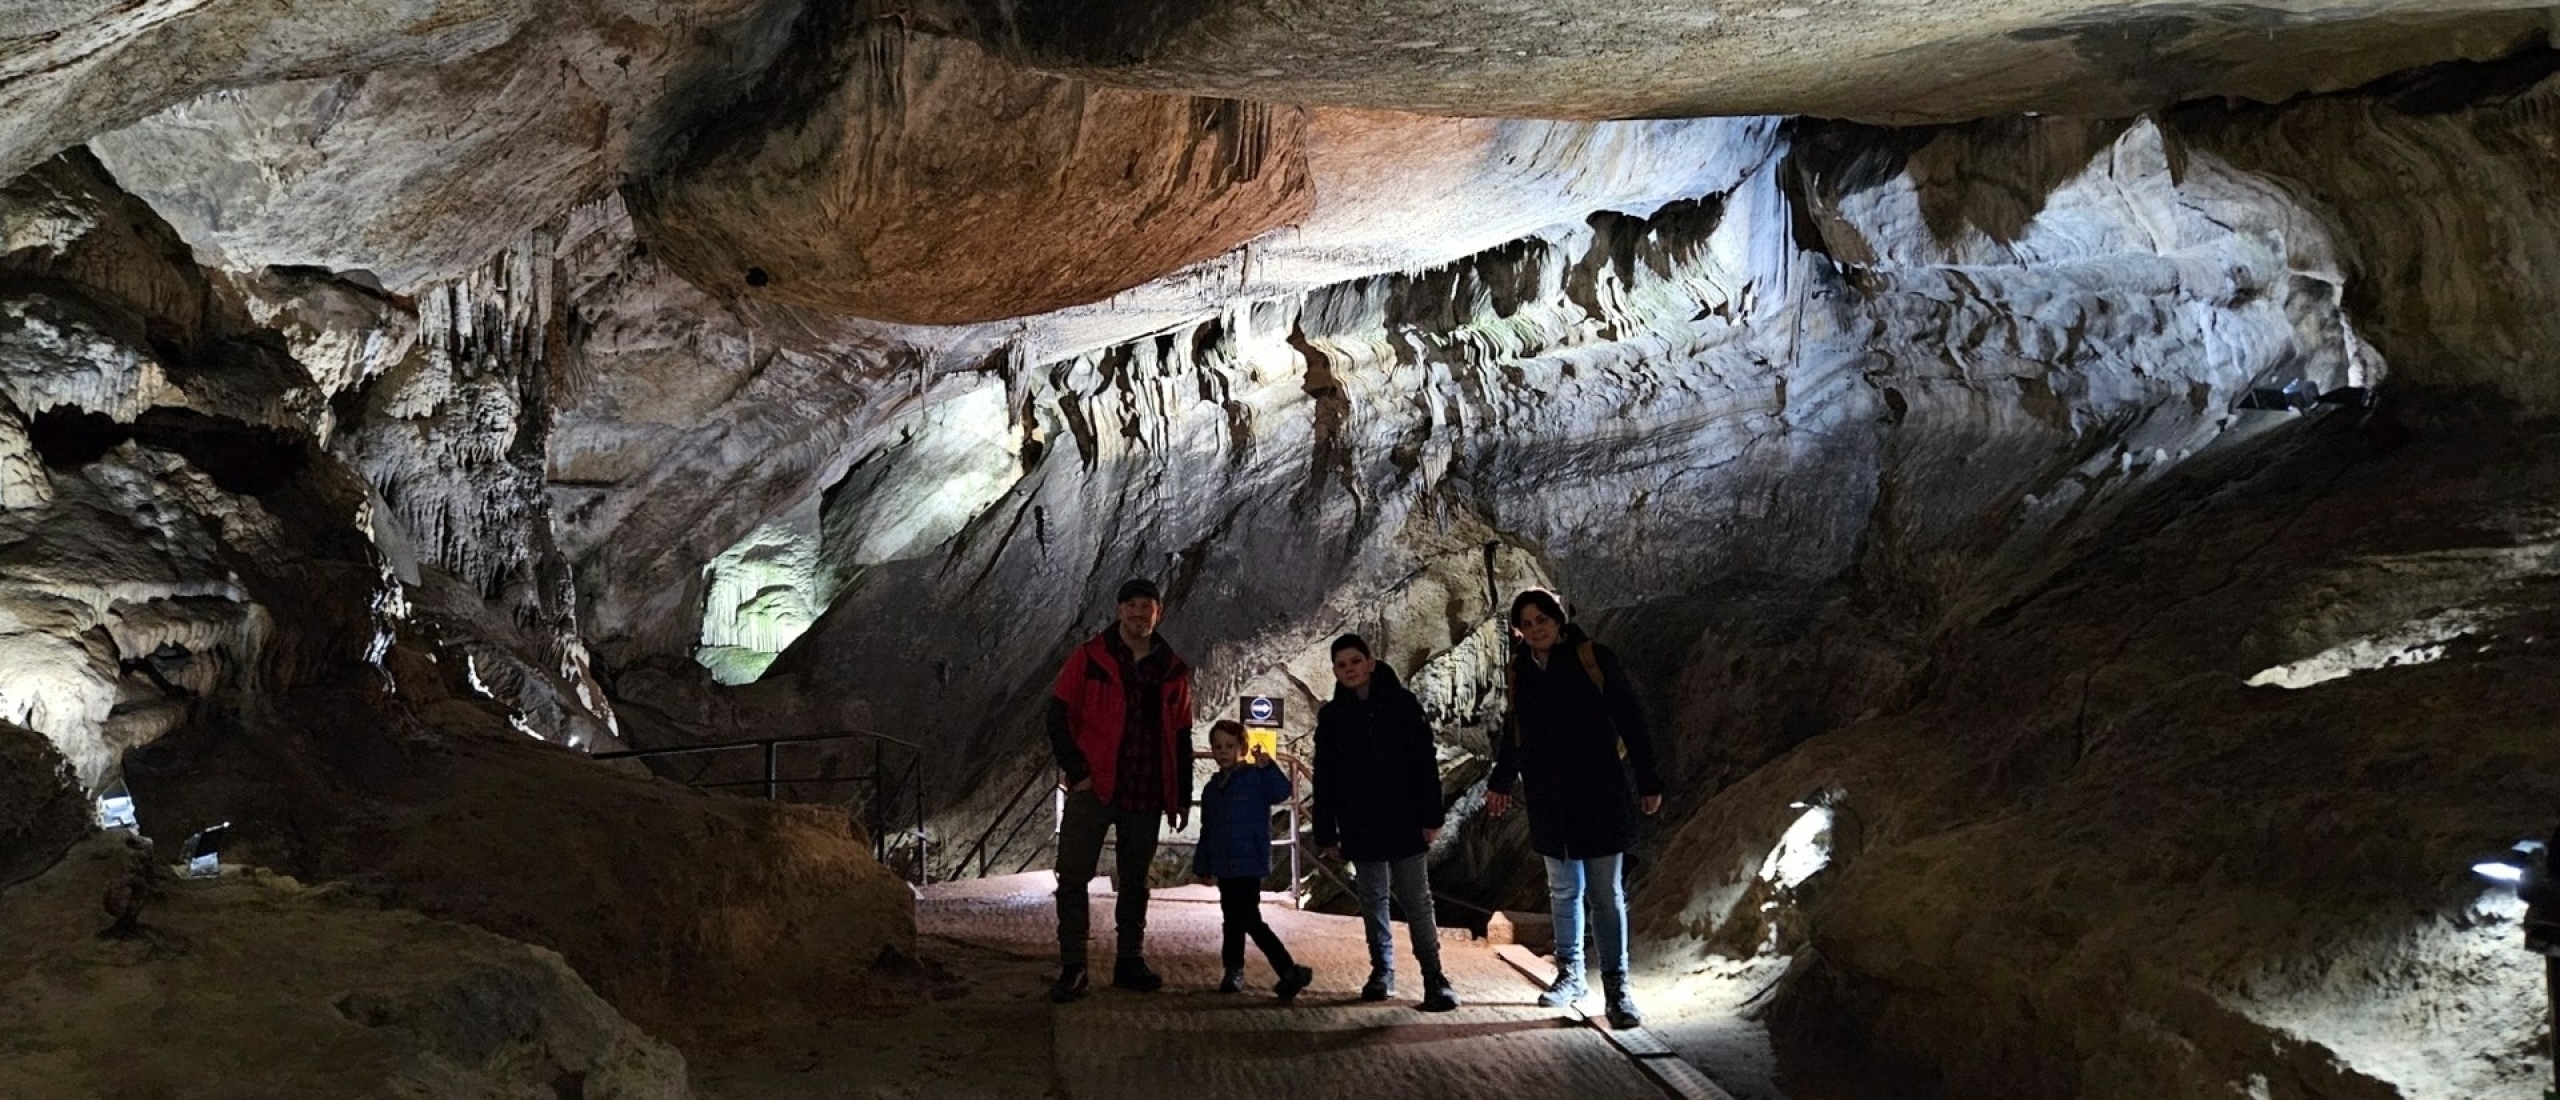 Grotten van Remouchamps met gezin